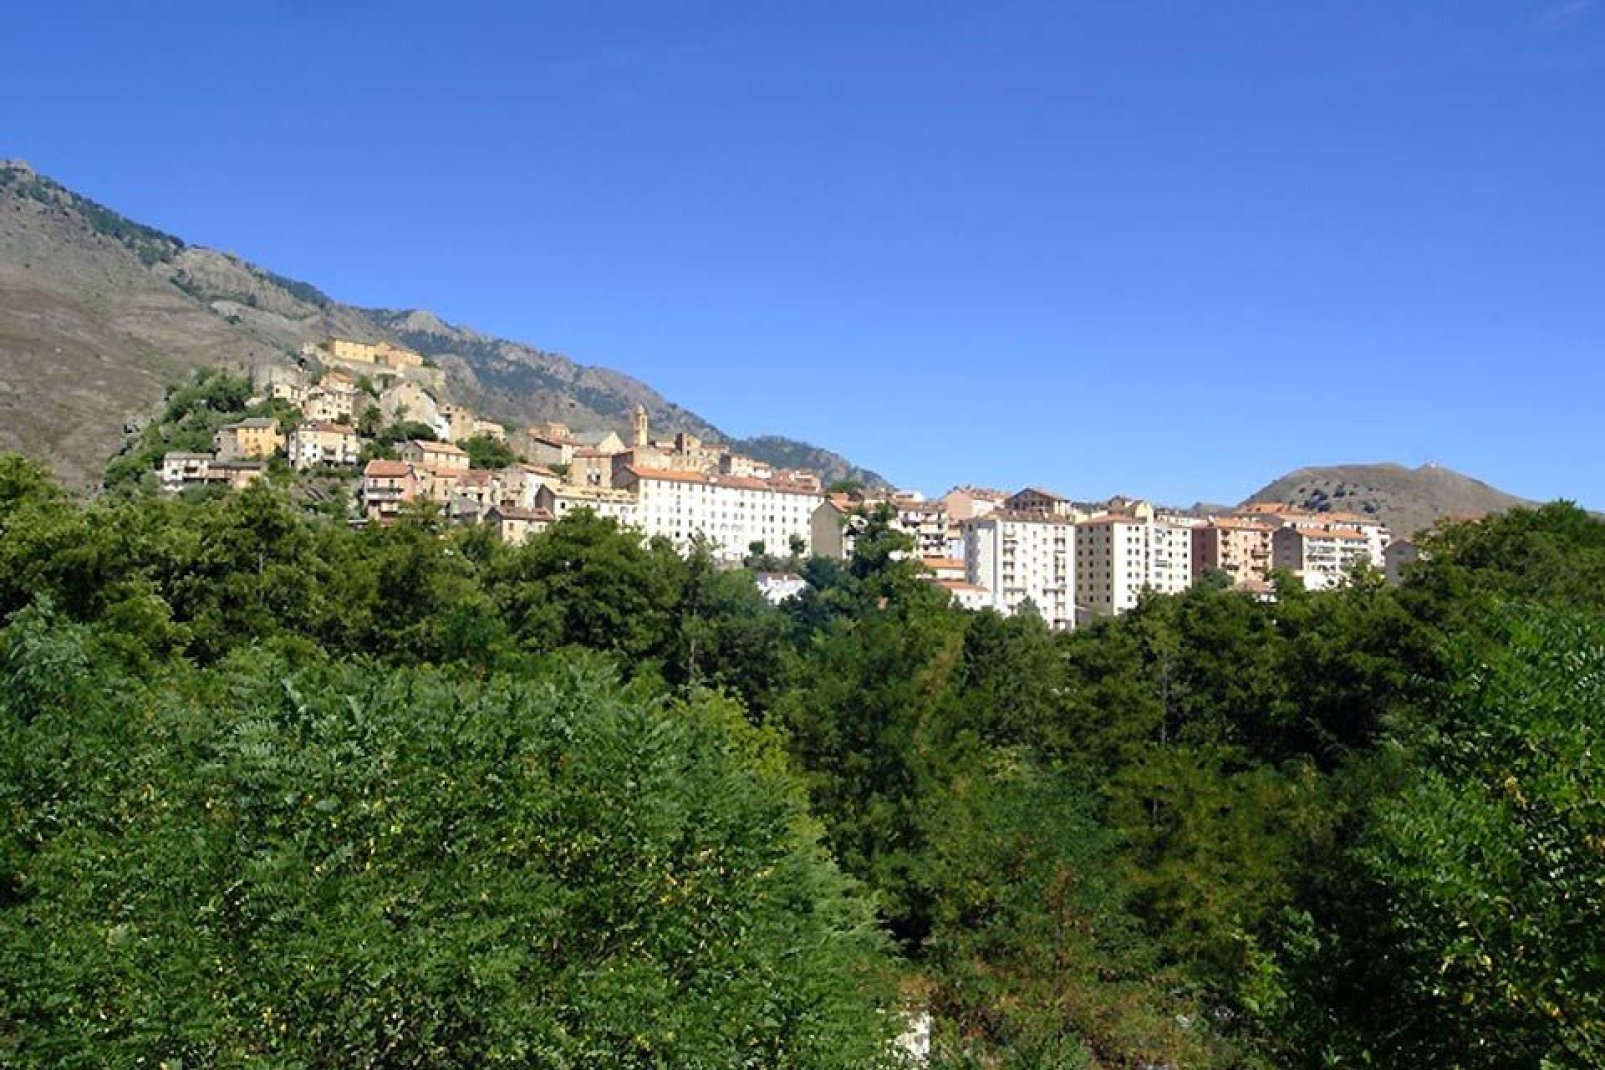 Corte liegt im Zentrum Korsikas auf 450 m Höhe zwischen Bastia und Ajaccio.